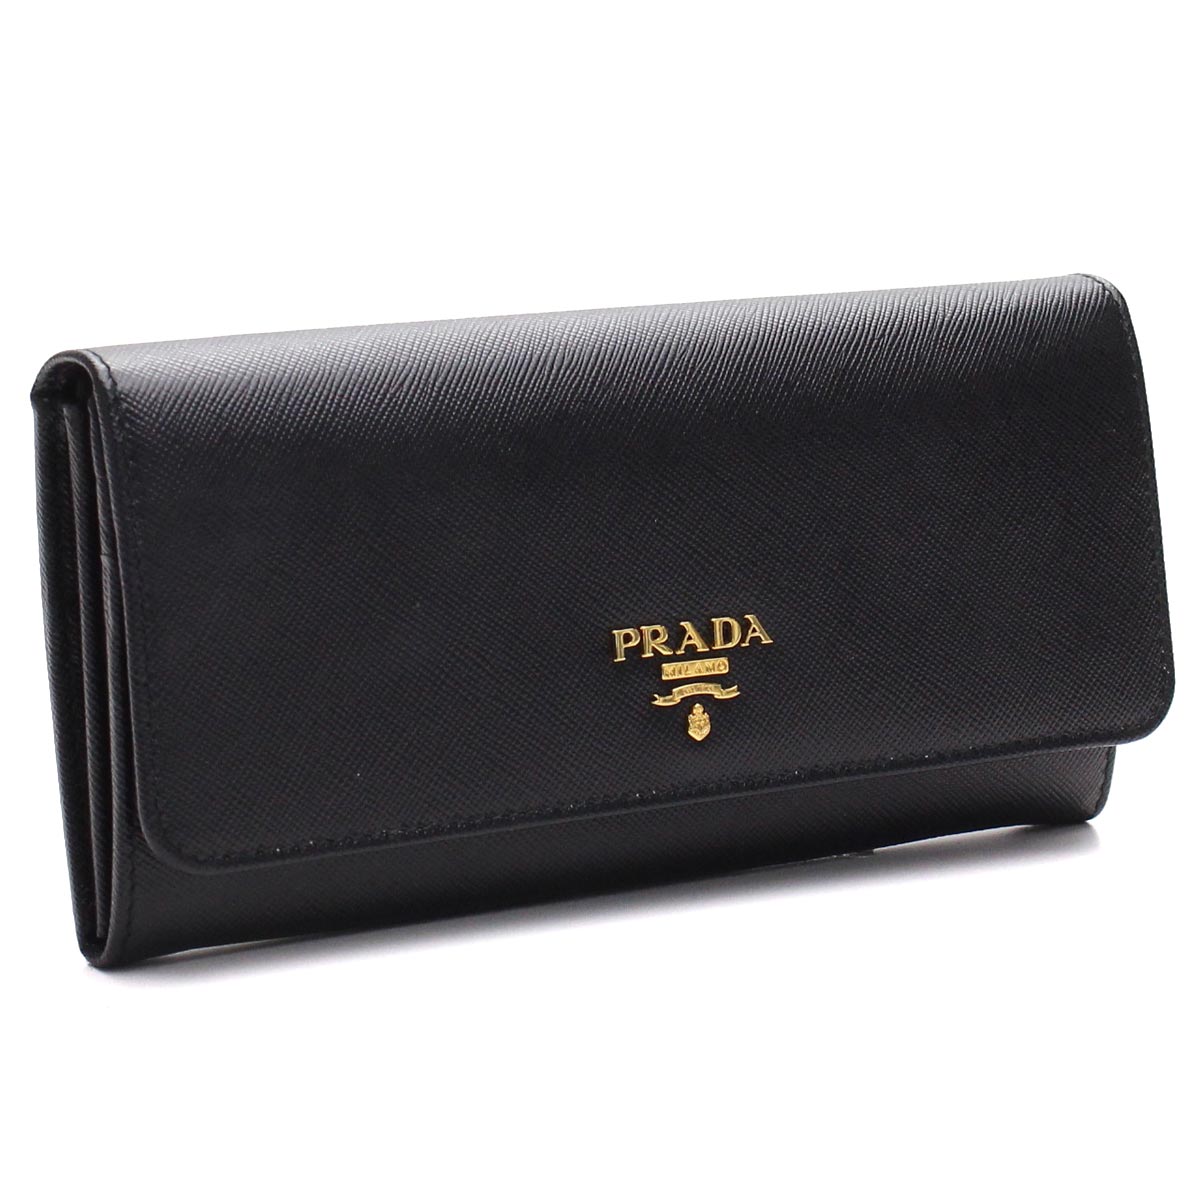 プラダ PRADA 財布 二つ折り 長財布 小銭入れ付き 1MH132 QWA F0002 NERO ブラック